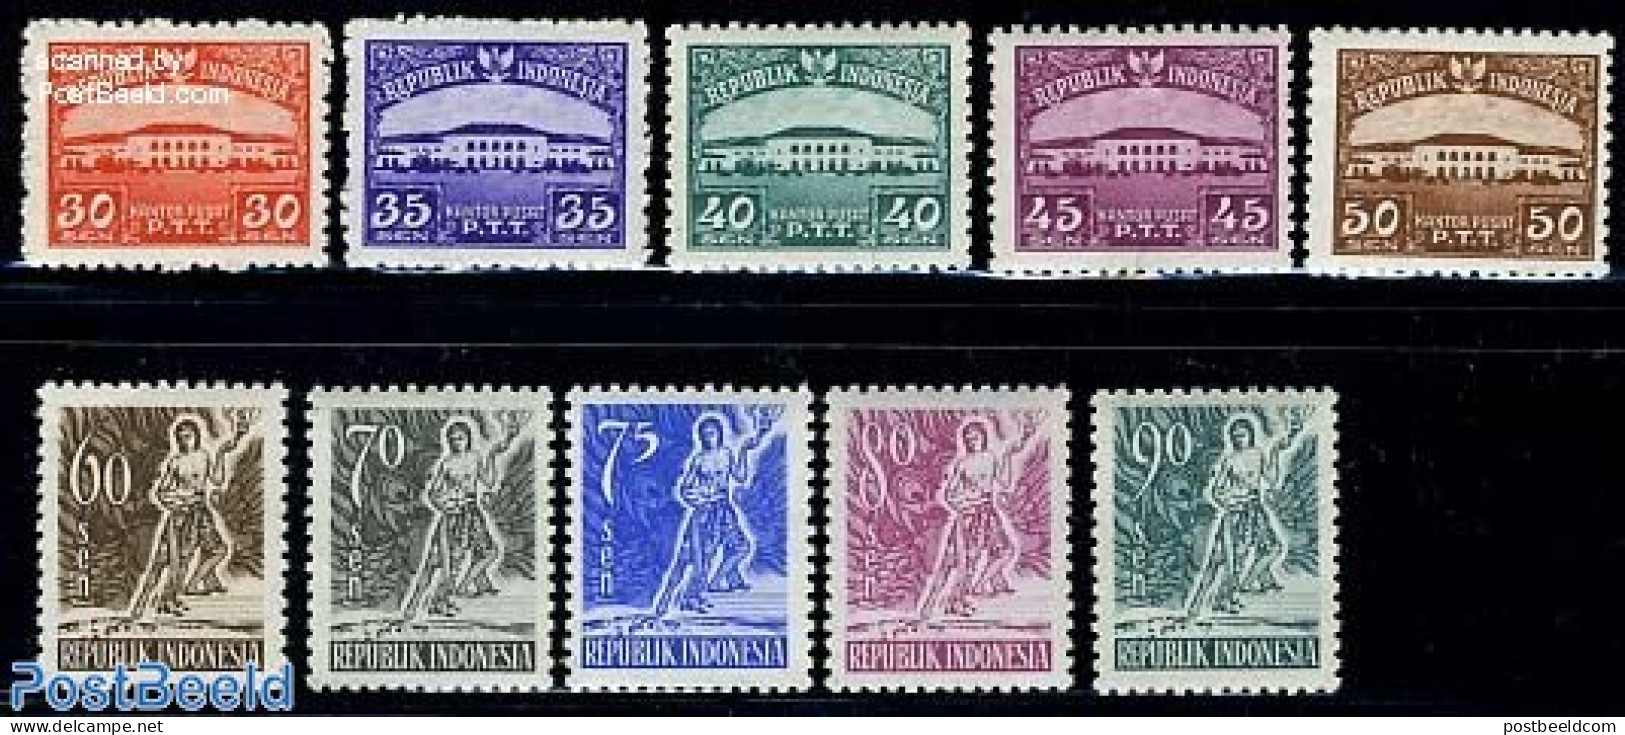 Indonesia 1953 Definitives 10v, Mint NH - Indonesië